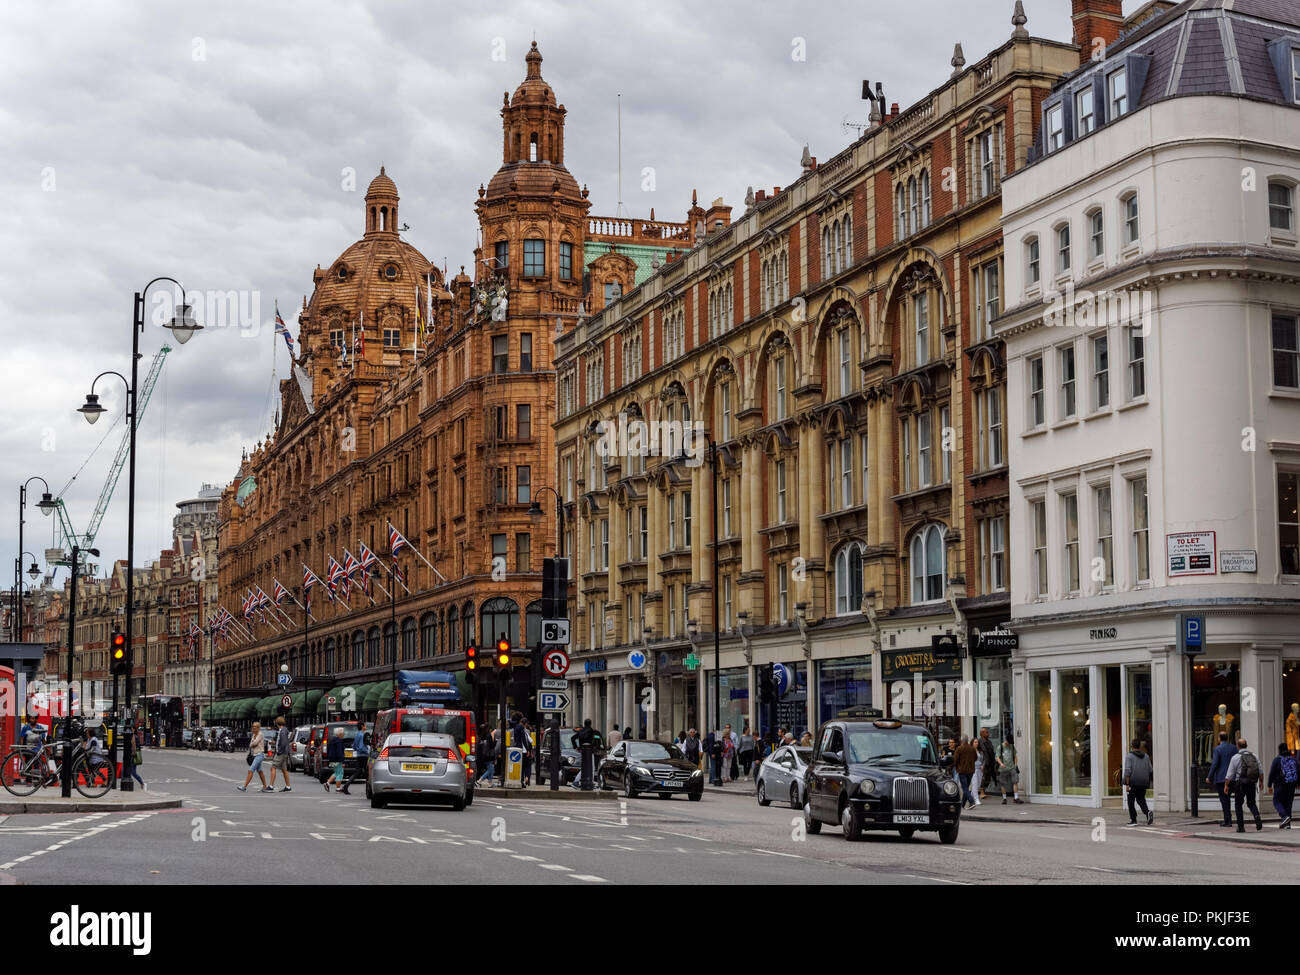 Harrods sur Brompton Road à Knightsbridge, Londres Angleterre Royaume-Uni UK Banque D'Images